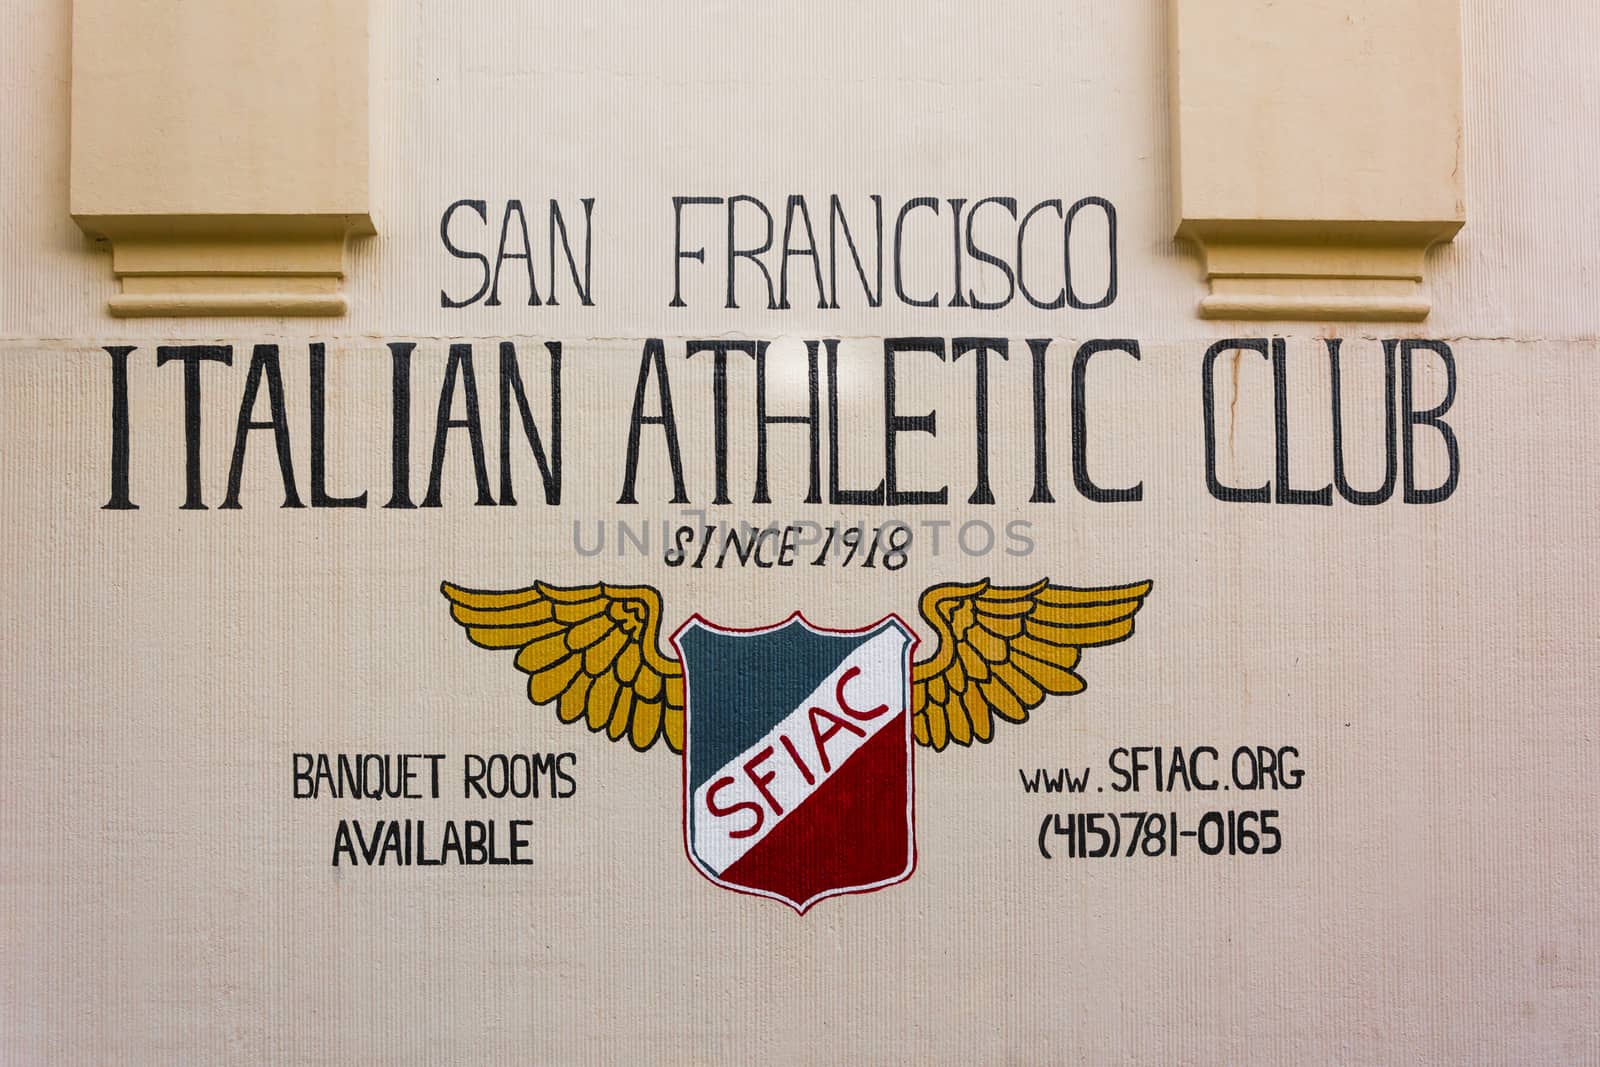 San Francisco Italian Athletic Club by rarrarorro